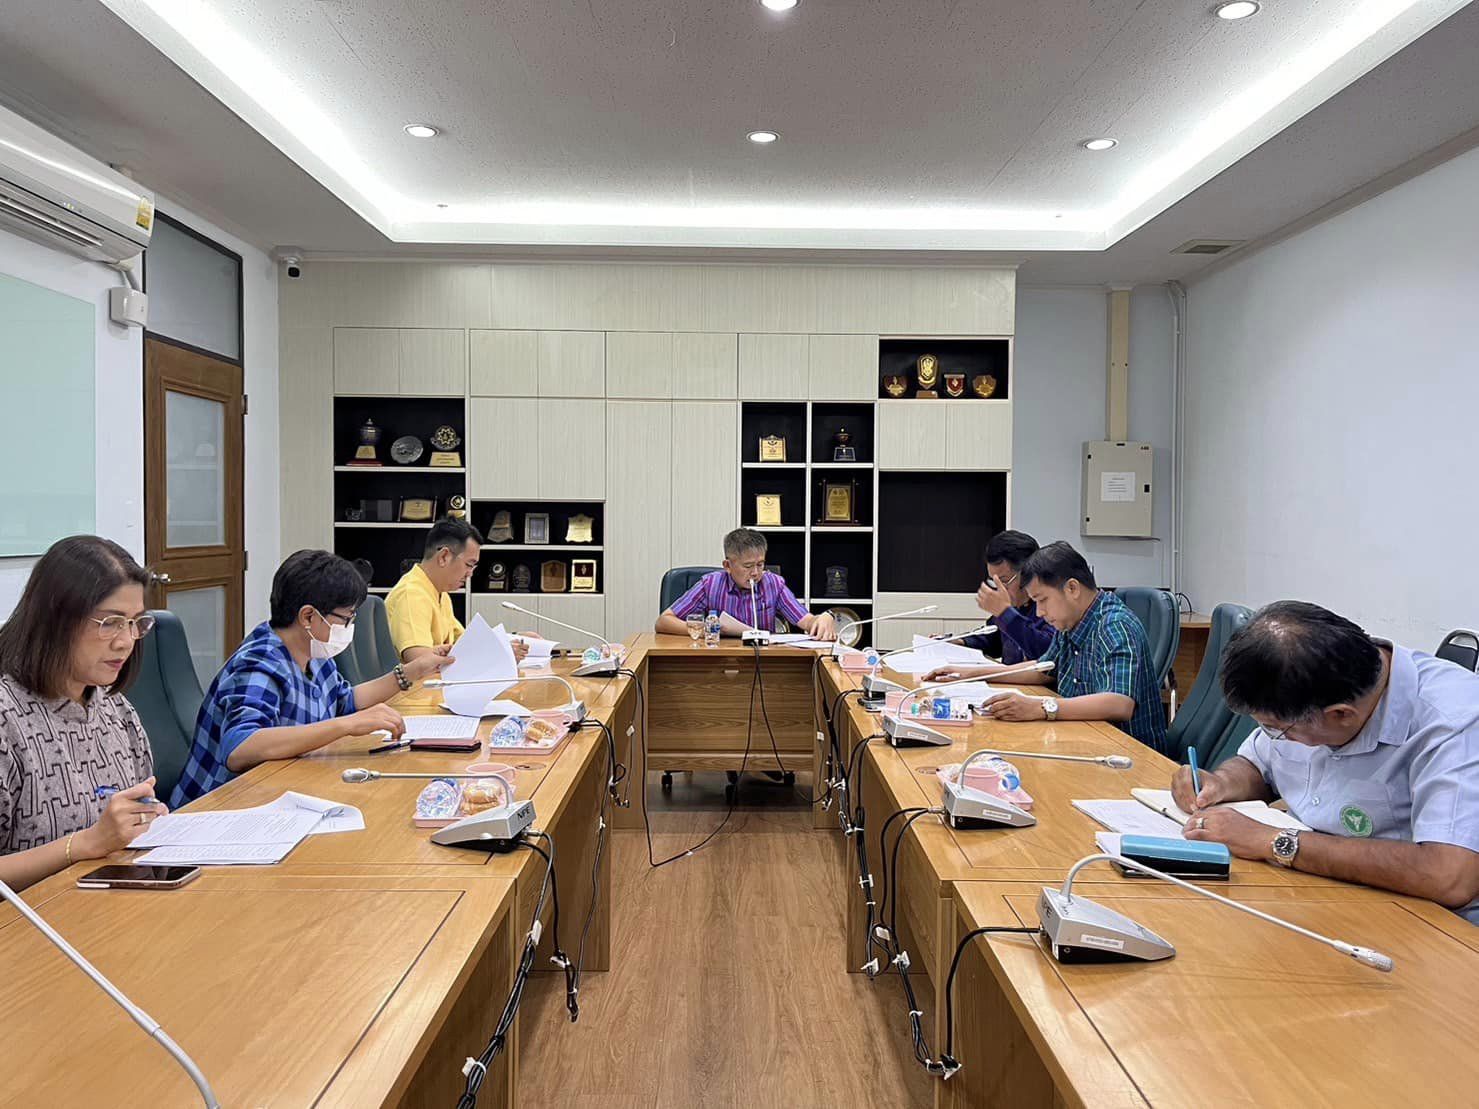 รองผู้ว่าราชการจังหวัดกาญจนบุรี ประชุมคณะกรรมการกลั่นกรองผลการประเมินผลการปฏิบัติราชการเรื่อง "การพิจารณาการเลื่อนเงินเดือนและเลื่อนขั้นค่าจ้างลูกจ้างประจำ (1 เมษายน 2567)" ครั้งที่ 1/2567 